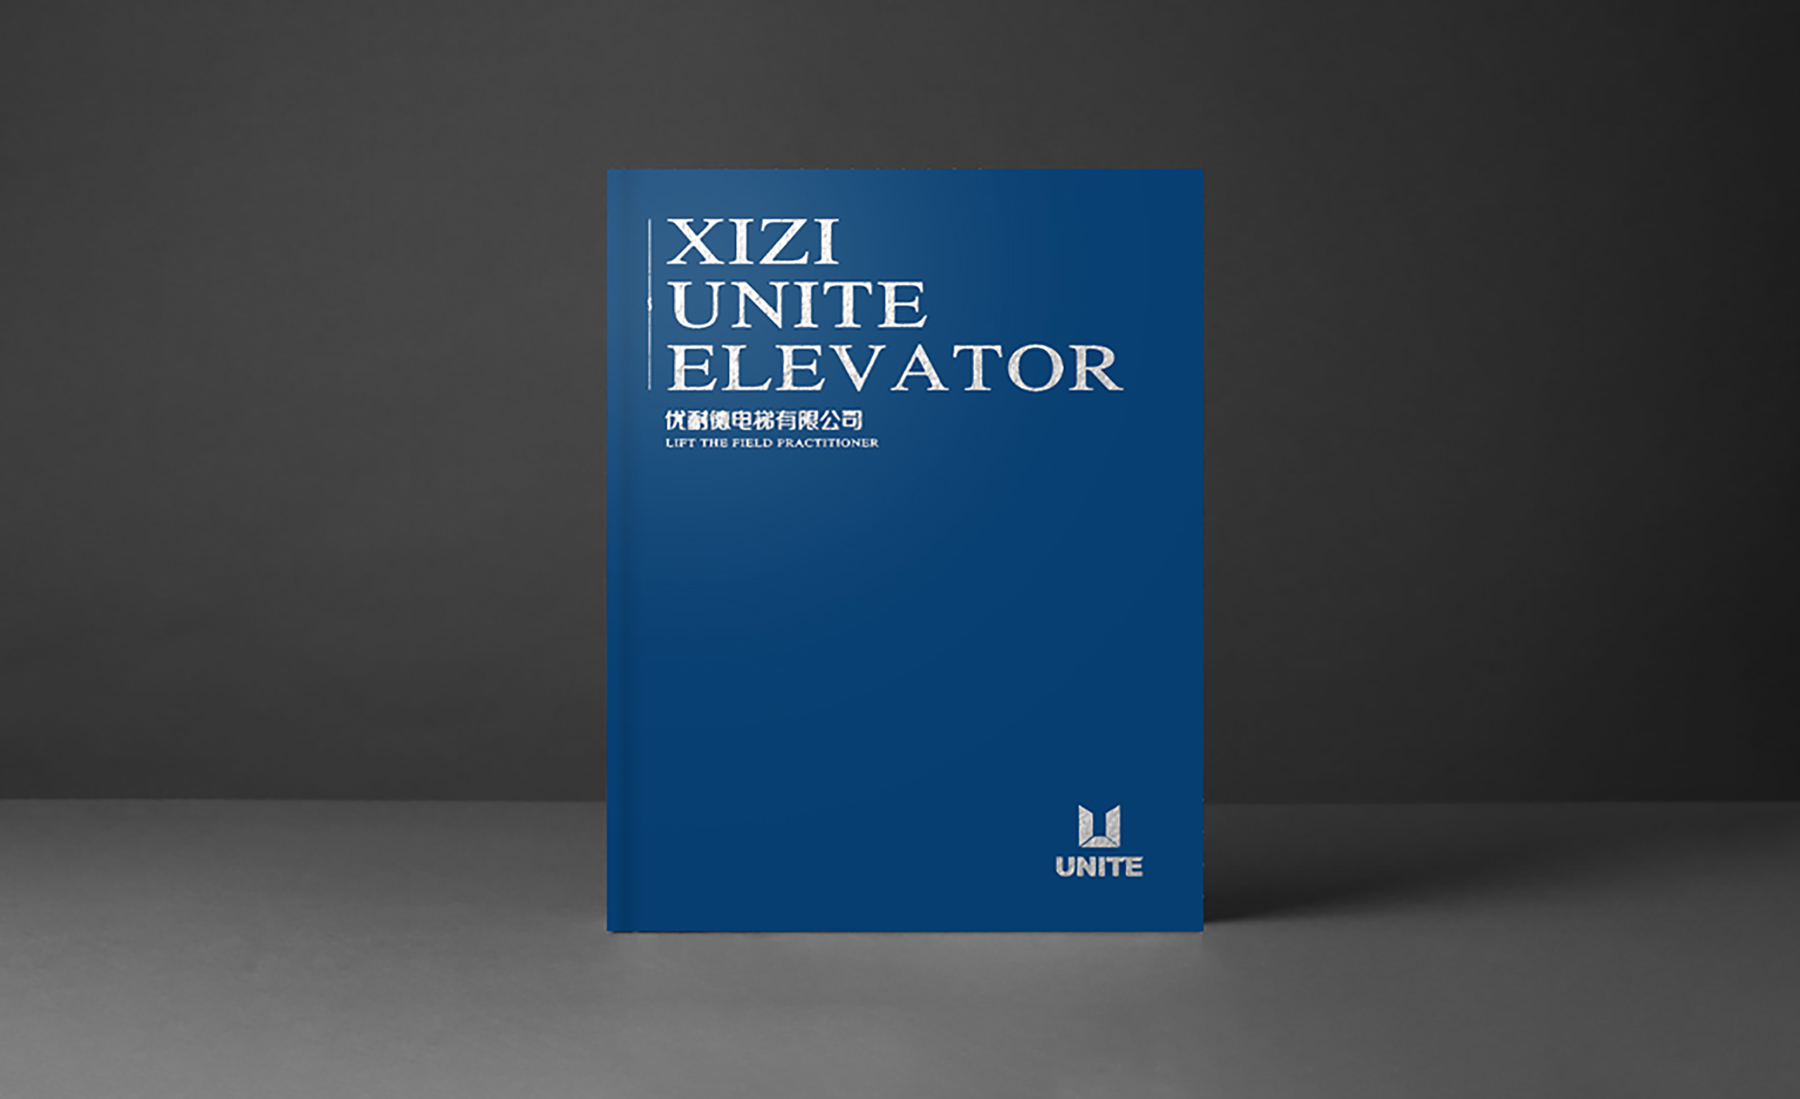 西子优耐德电梯画册,电梯画册设计,杭州电梯画册设计,杭州画册设计.jpg